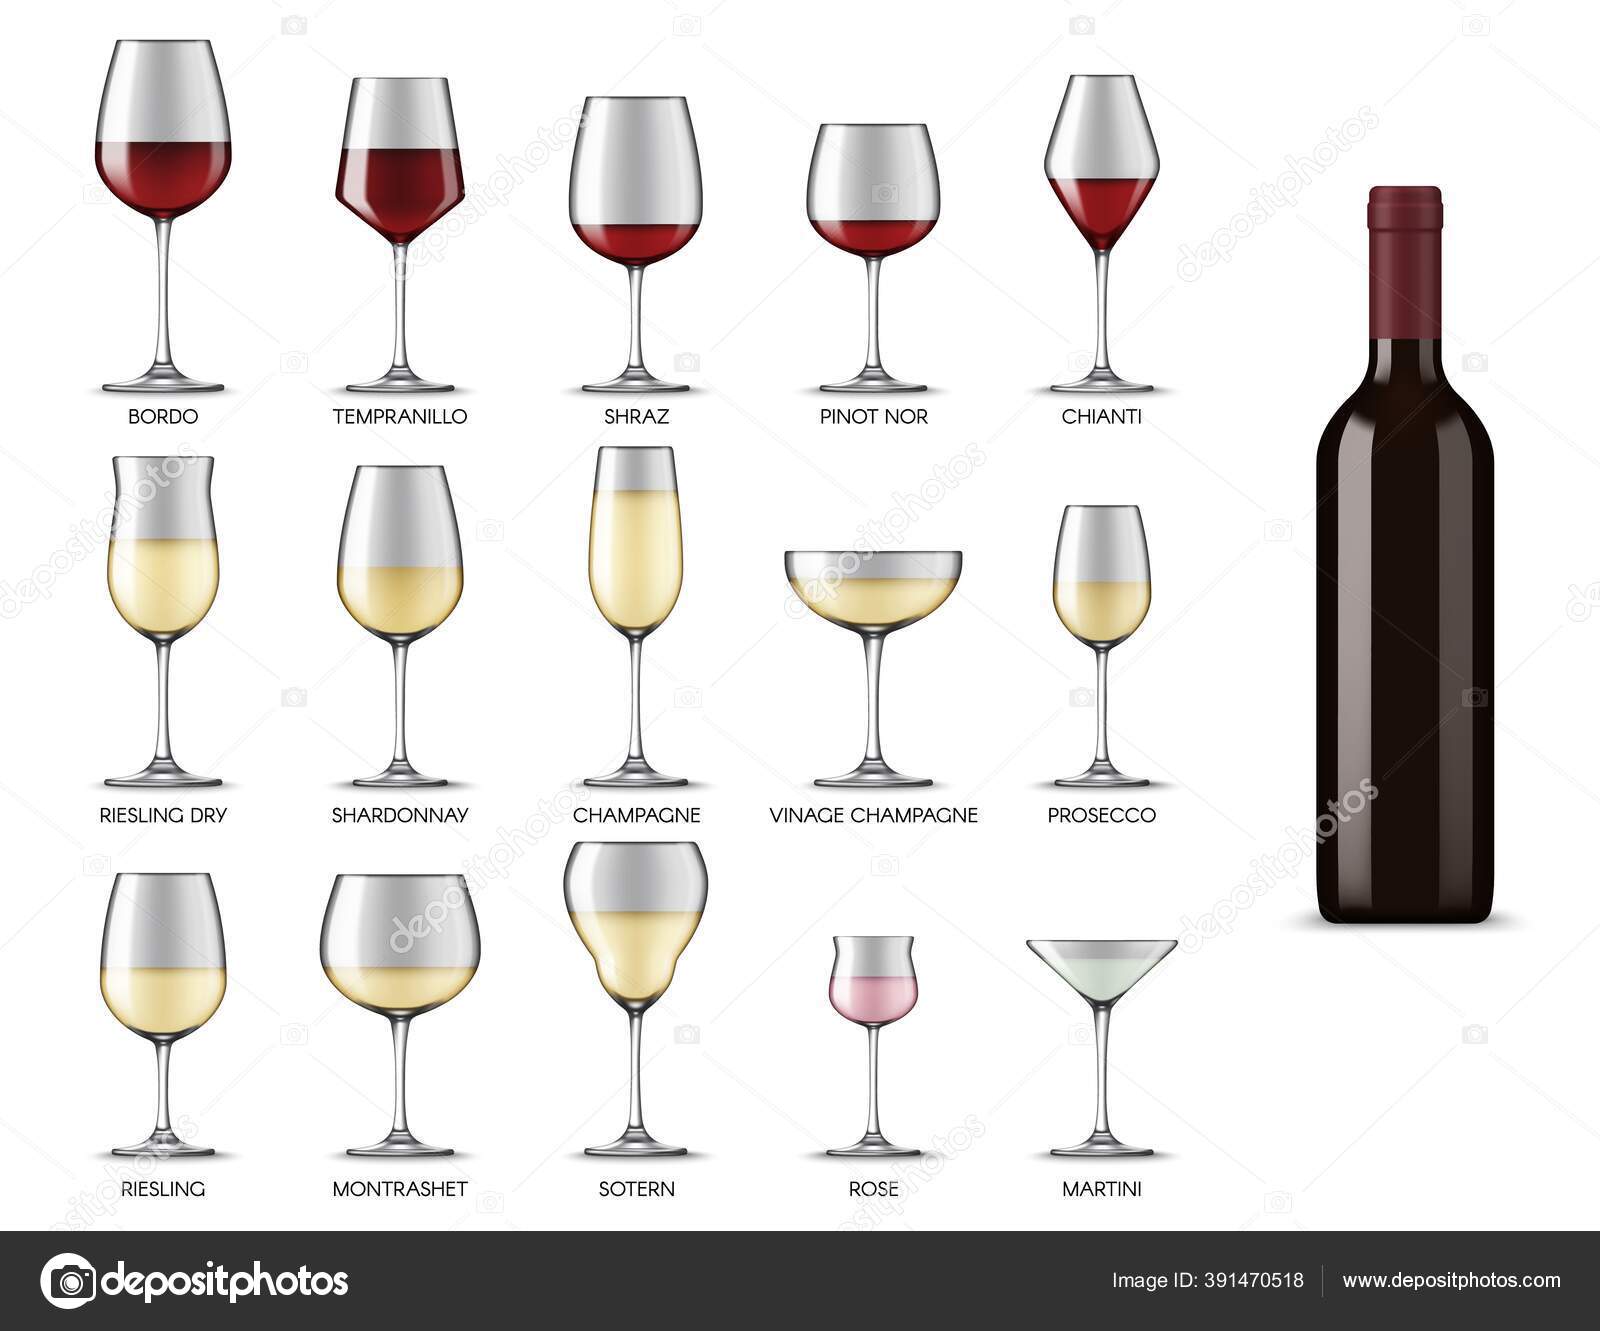 https://st4.depositphotos.com/1020070/39147/v/1600/depositphotos_391470518-stock-illustration-wine-glasses-types-white-red.jpg